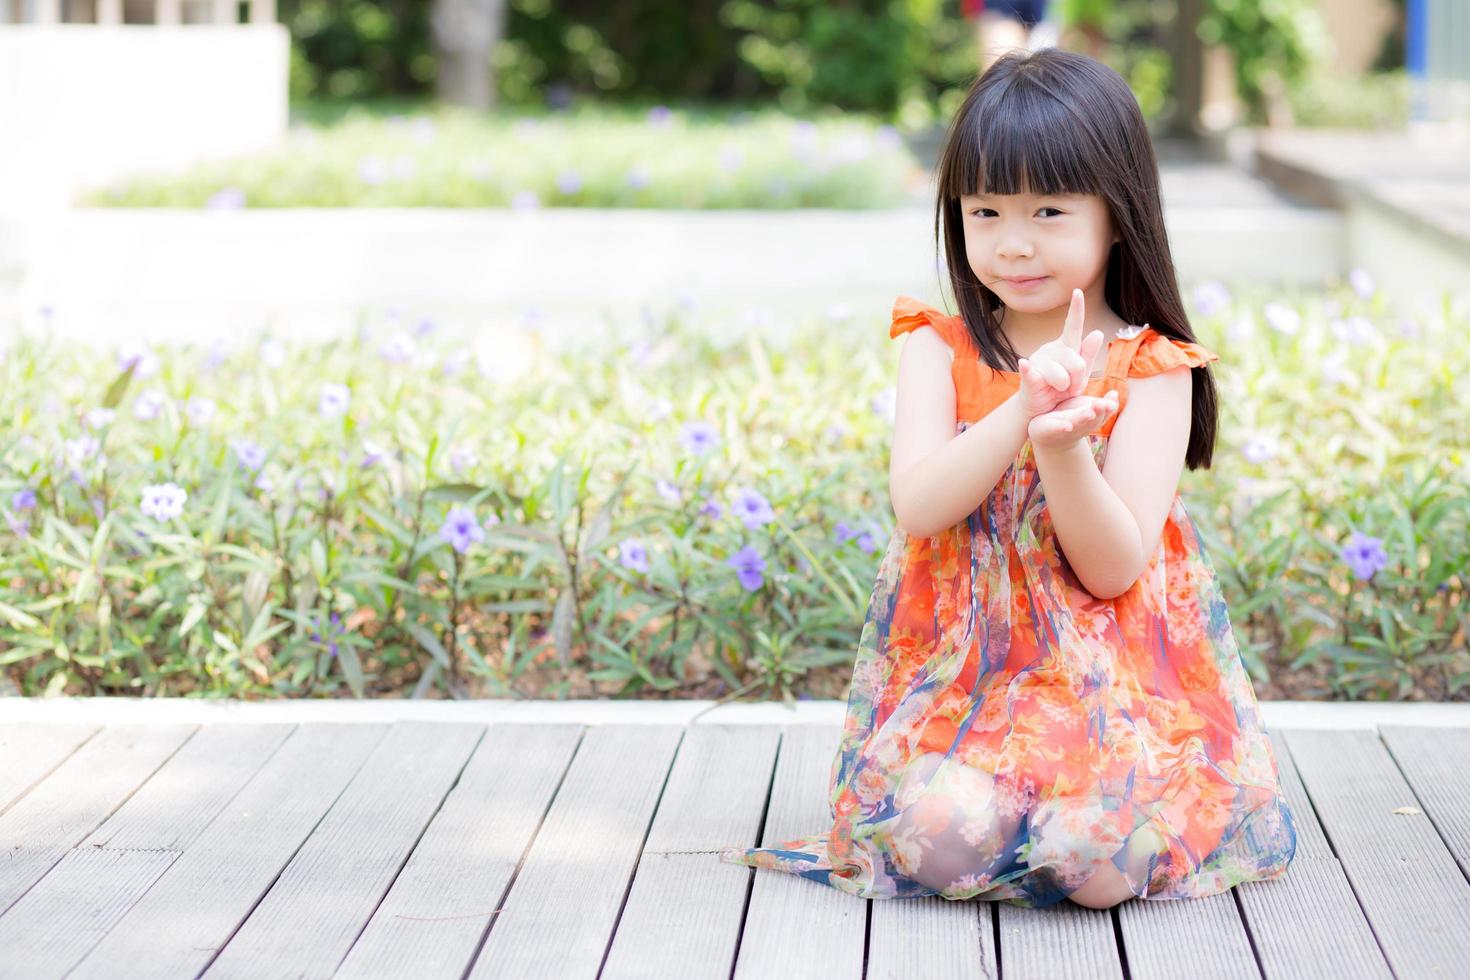 retrato de uma menina asiática de um pé sorridente na grama do parque foto